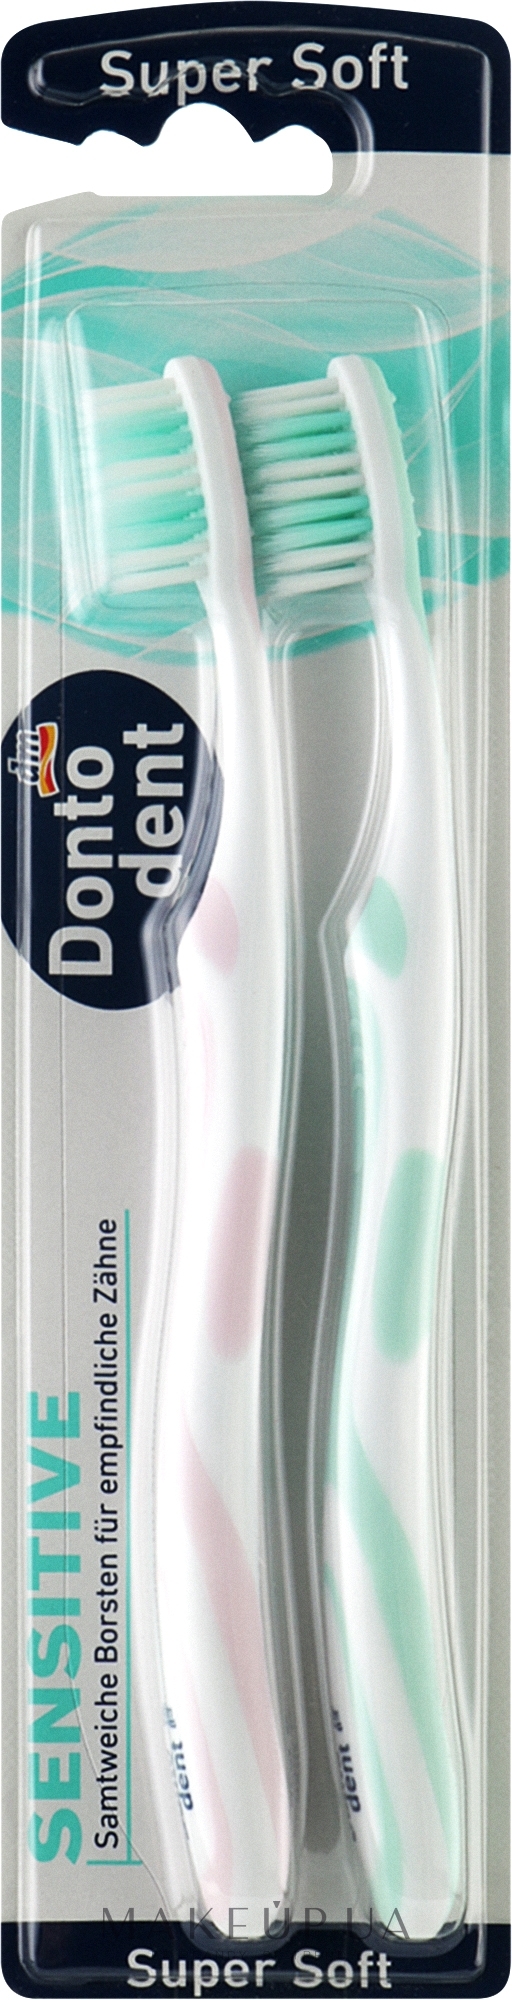 Зубні щітки ультрам'які, бірюзова + рожева, 2 шт. - Dontodent Sensitive Super Soft — фото 2шт